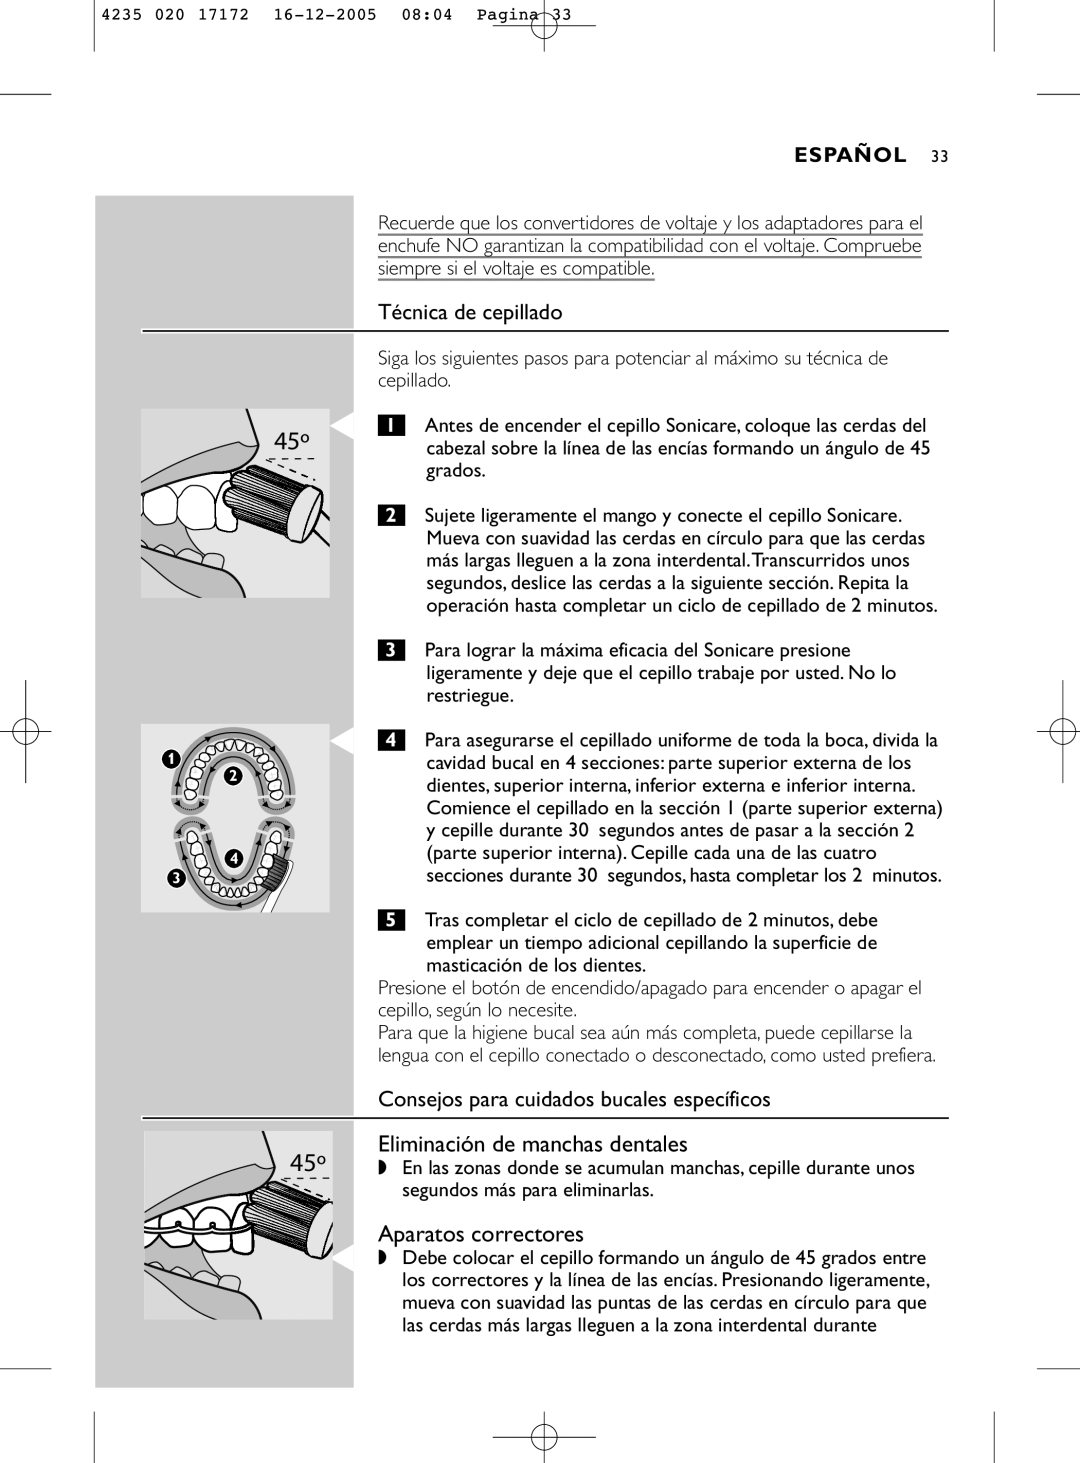 Sonicare e5000 manual Eliminación de manchas dentales, Aparatos correctores, Técnica de cepillado, Español 